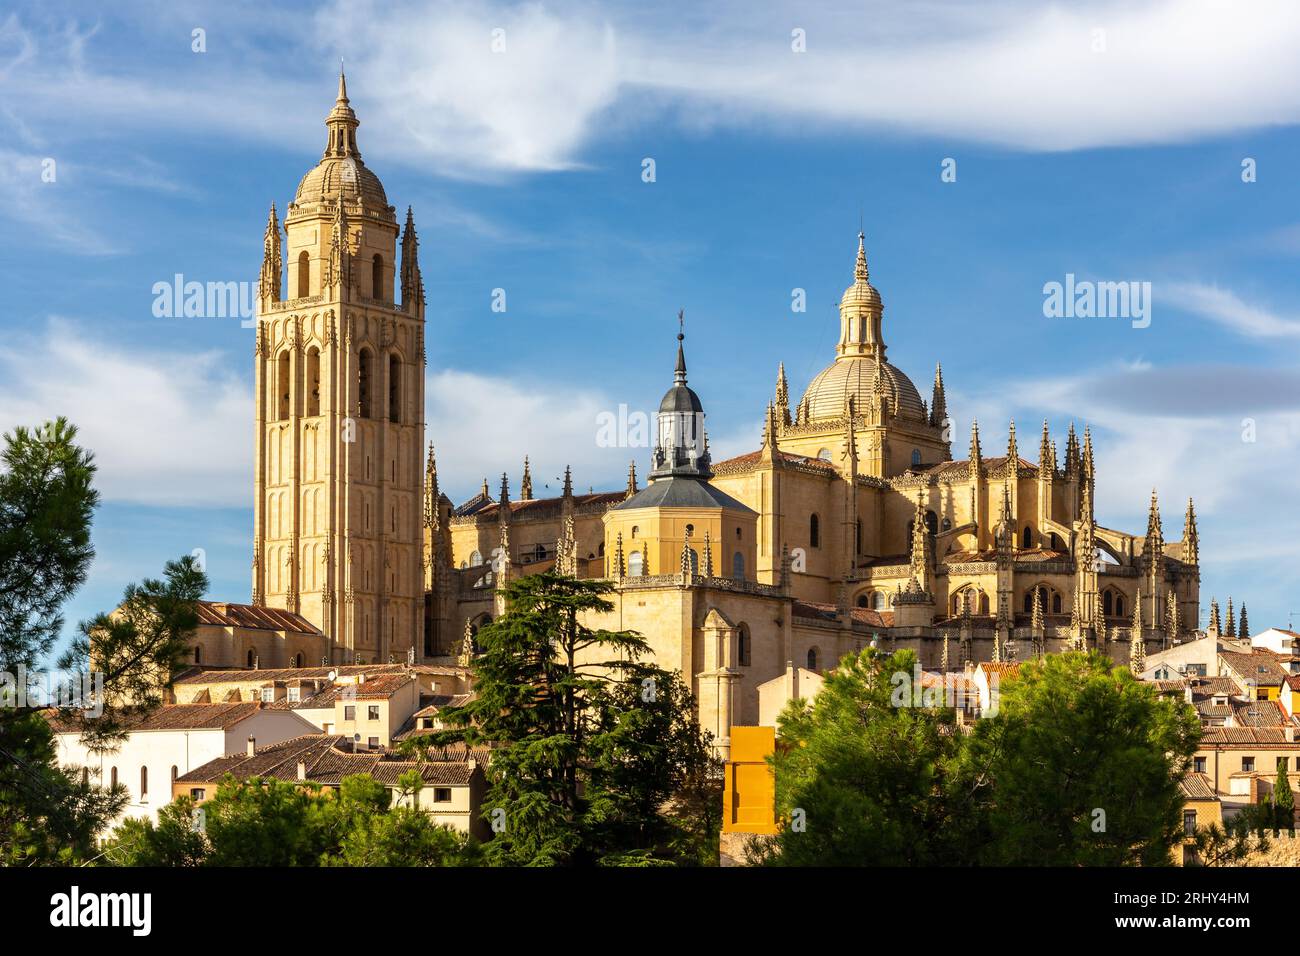 Segovia Kathedrale mittelalterliches gotisches Gebäude mit reich verzierten Türmen, zwischen grünen Bäumen, Sommer, Spanien. Stockfoto